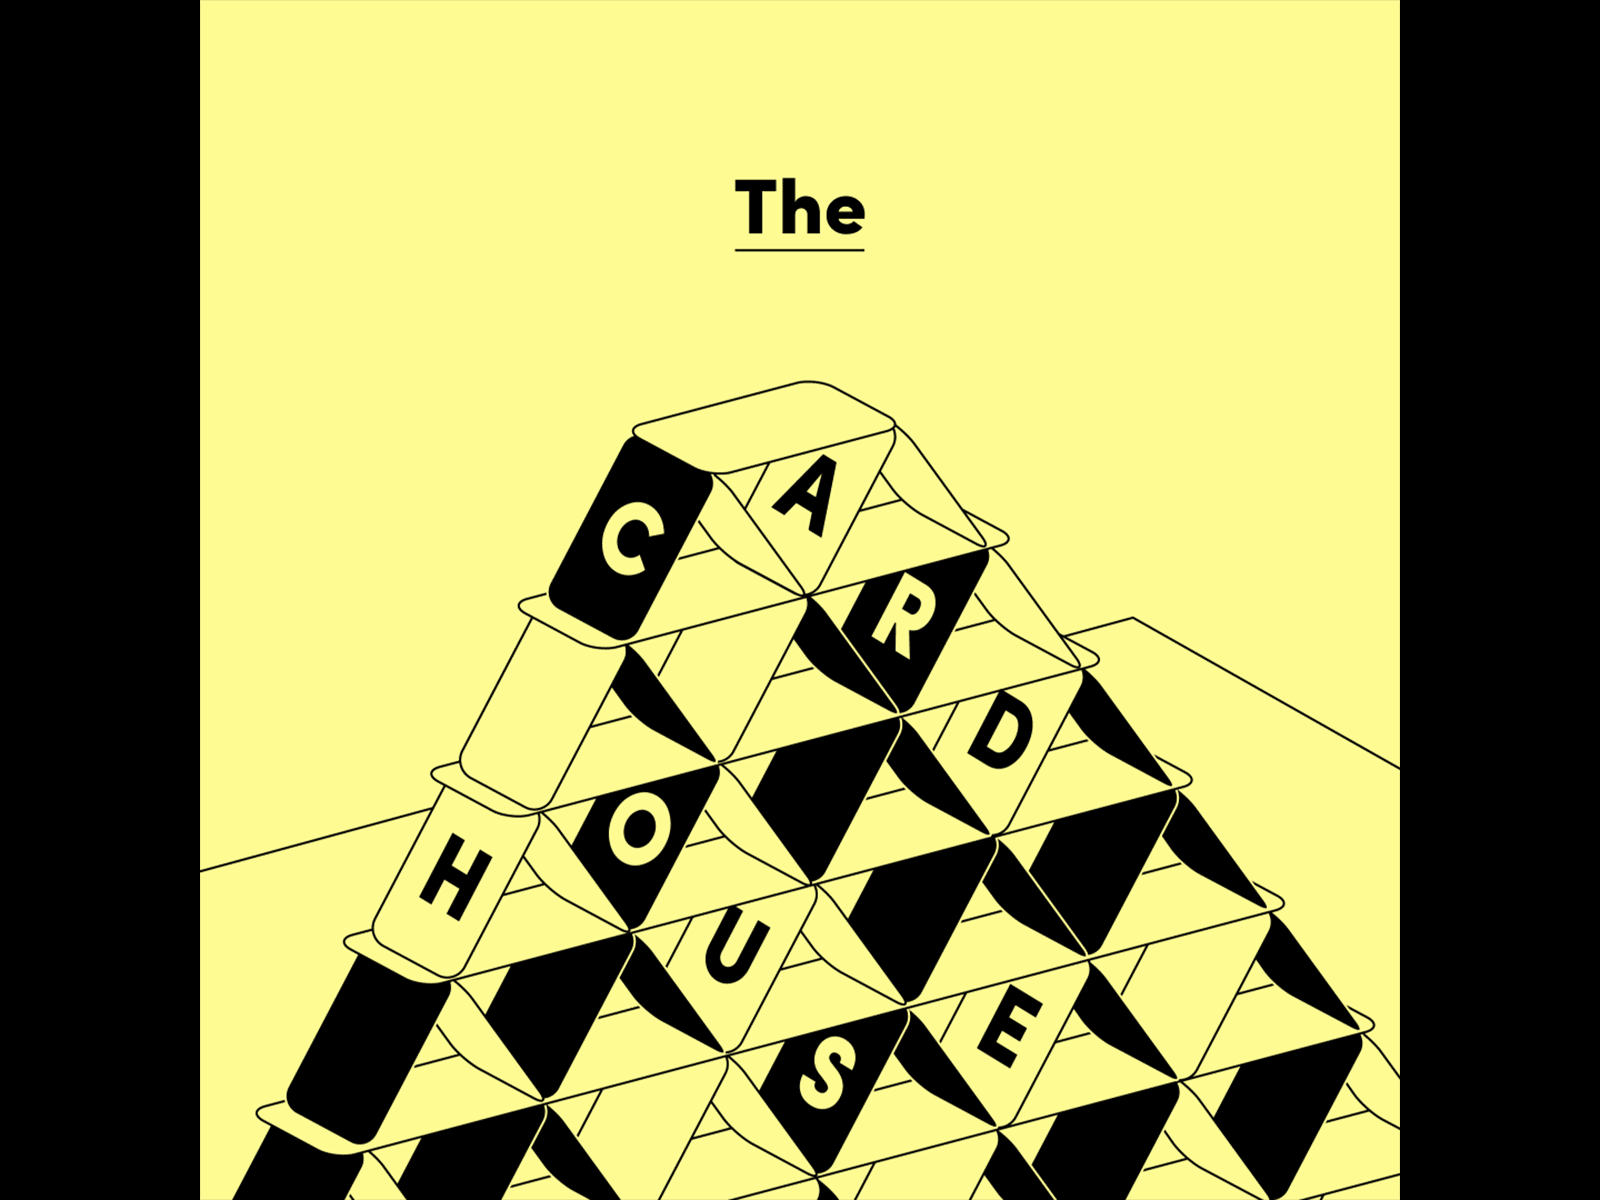 The Card House